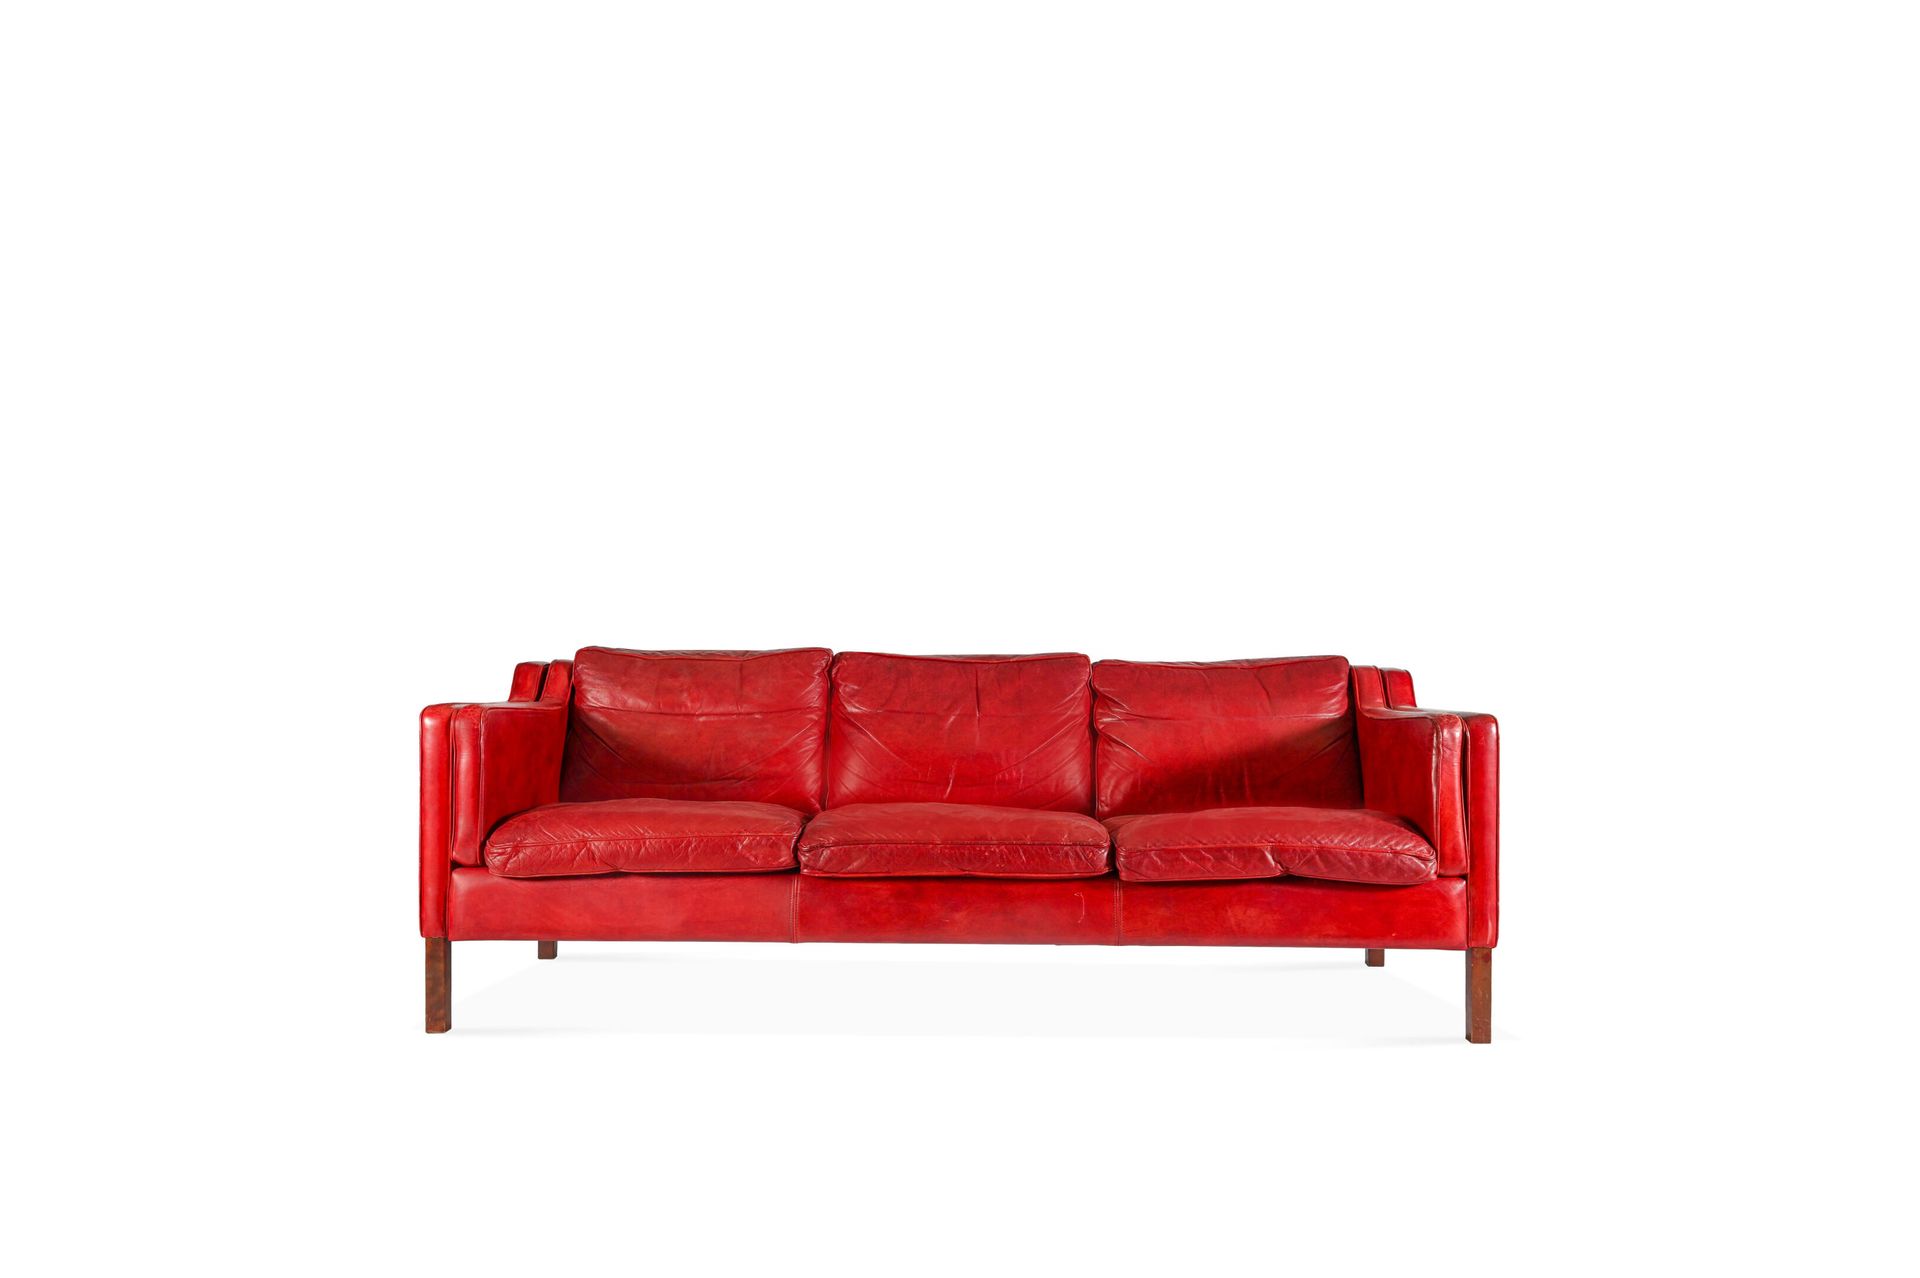 Null 1970年代的斯托比版。

大的三座沙发搁在方形柚木腿上。坐垫和框架用红色皮革覆盖。

坐垫下的织物上有出版商的名字。

H.73厘米-长200厘米-&hellip;